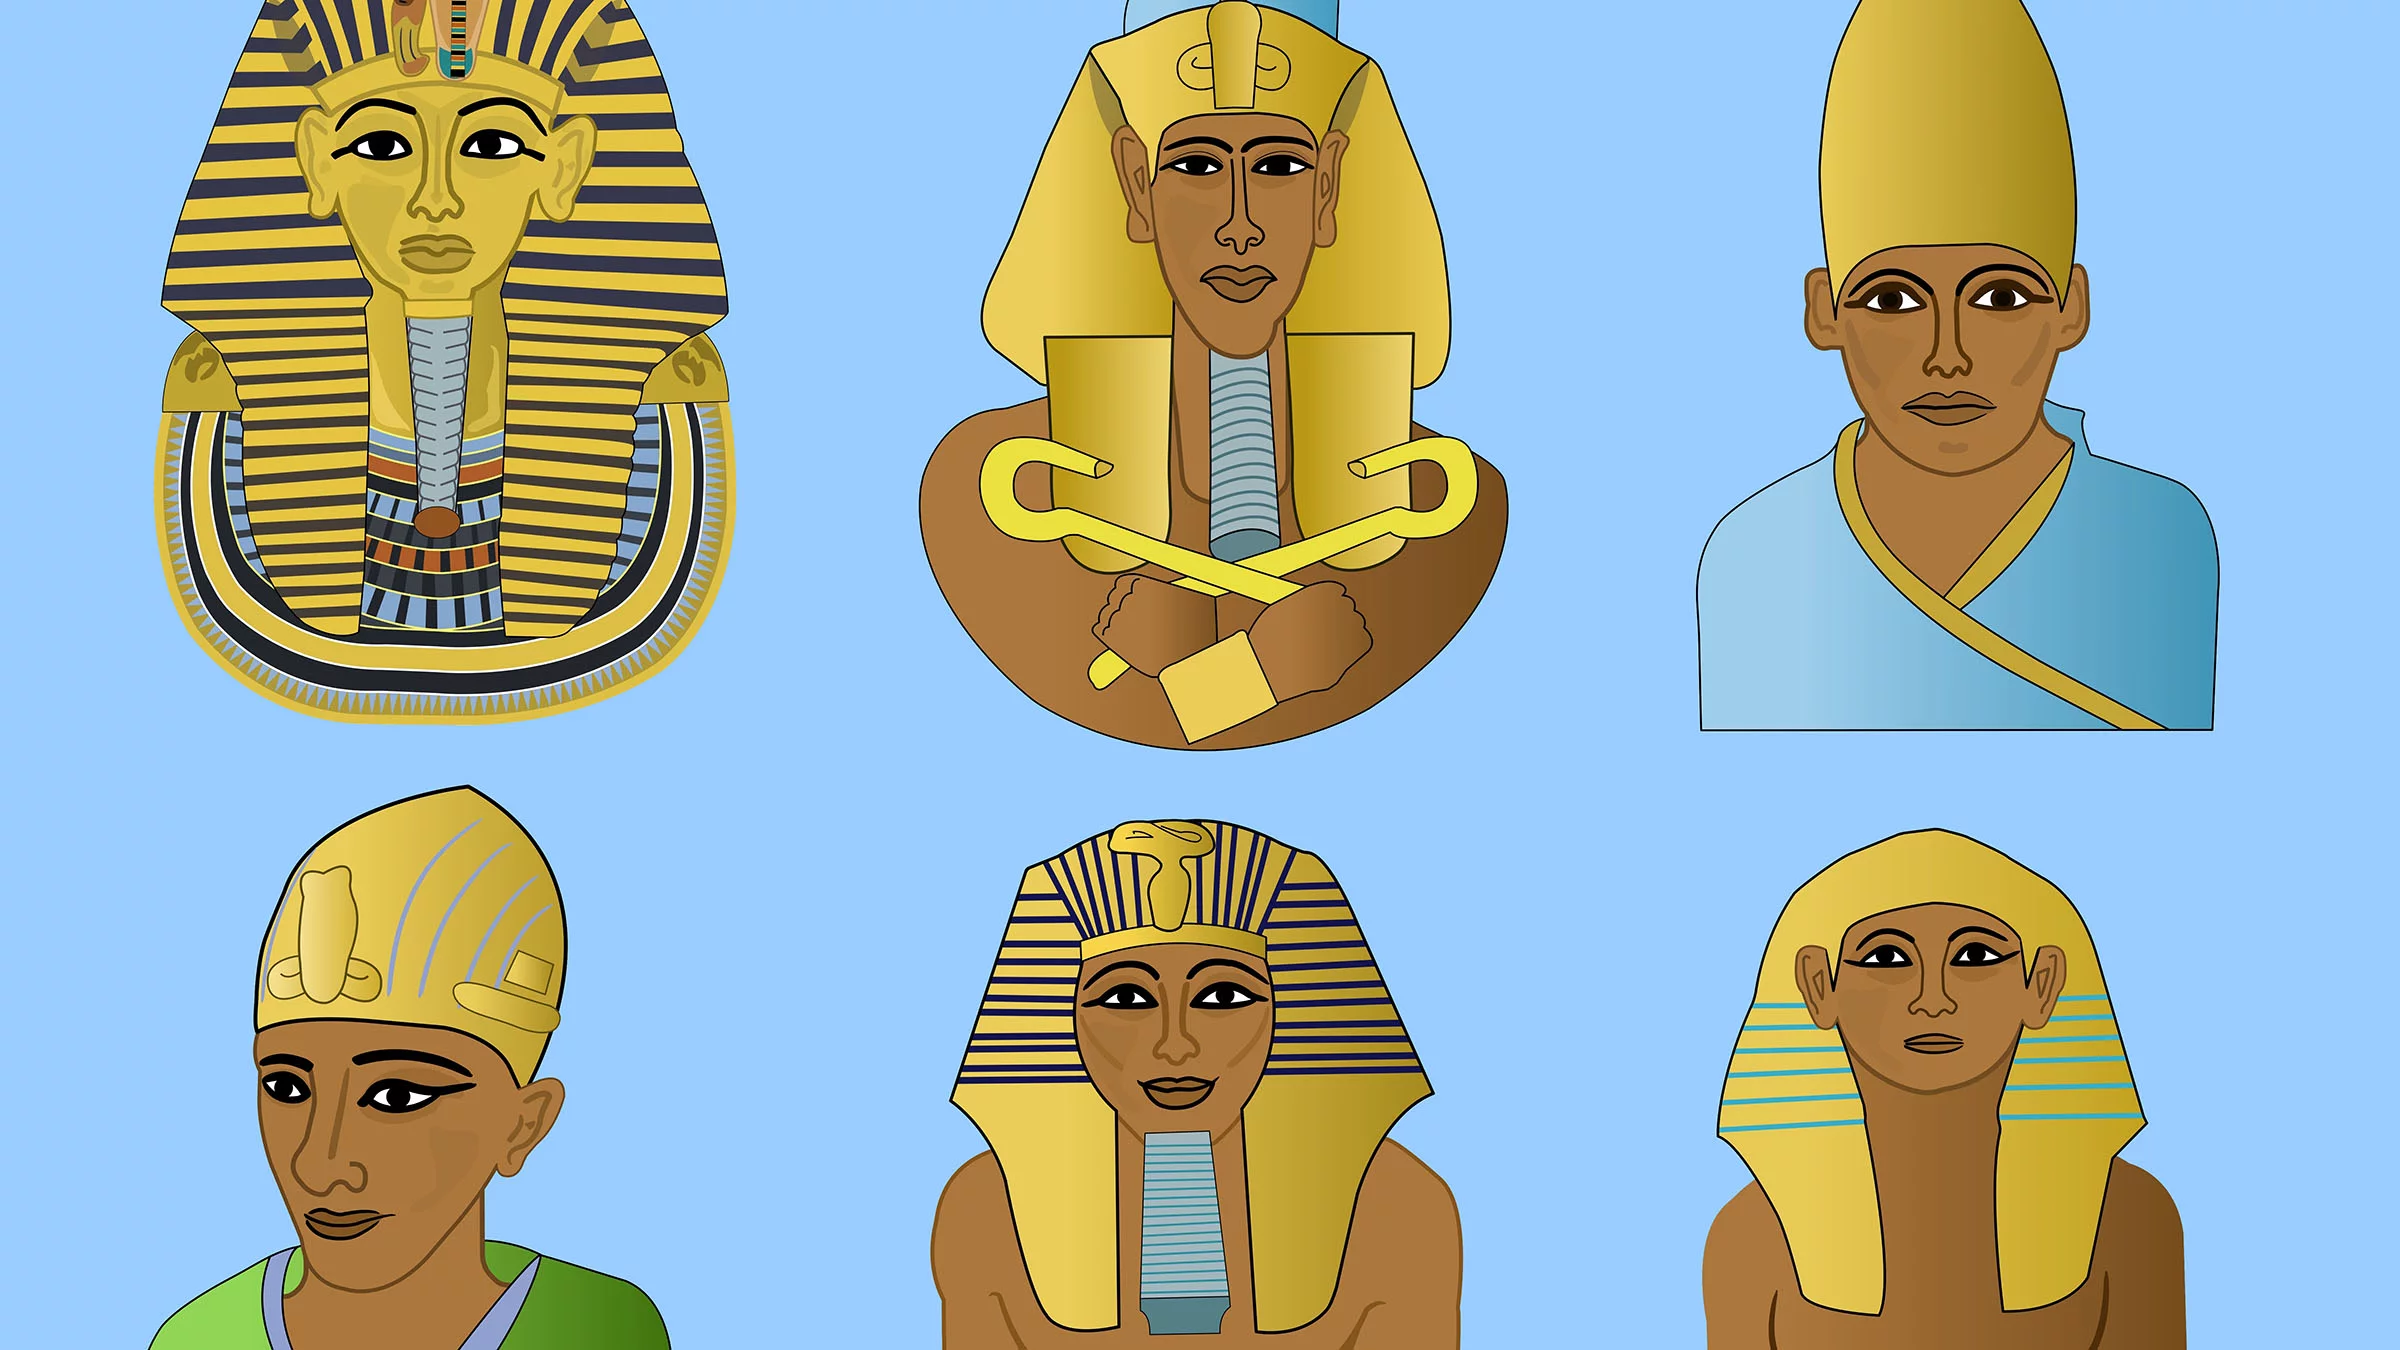 Les diferents corones dels faraons egipcis